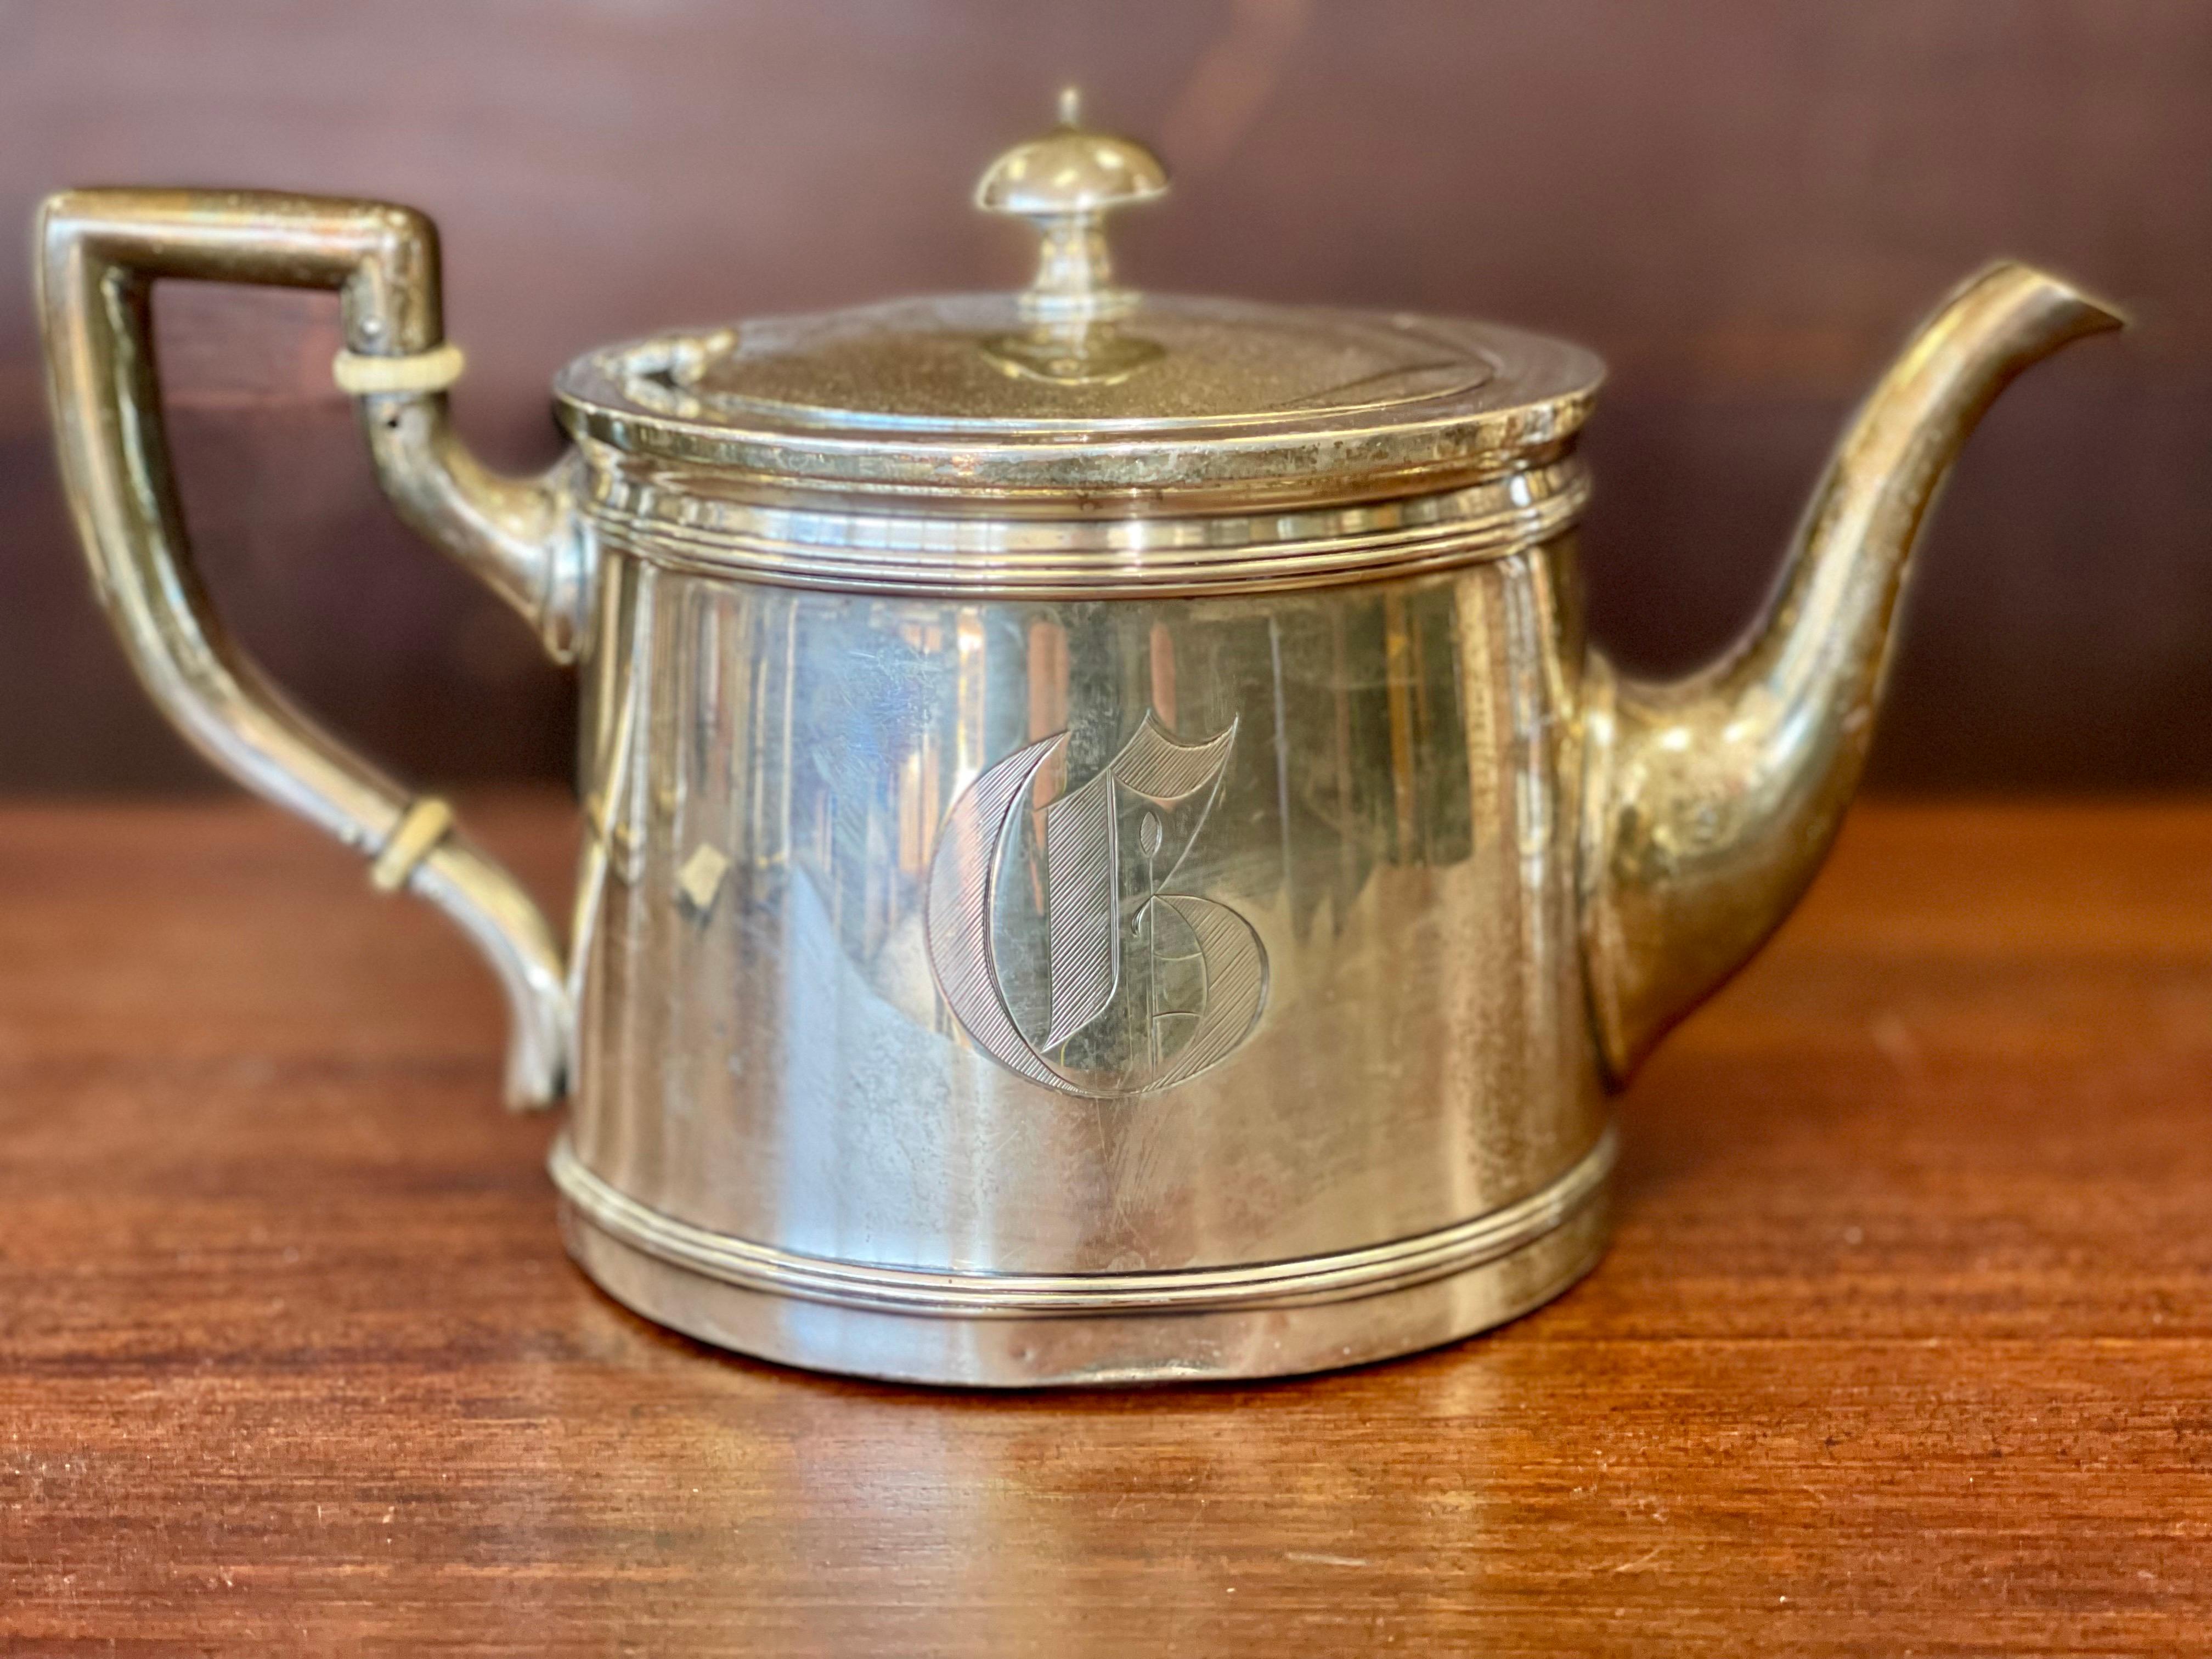 Meriden Britannia 5-Piece Sterling Silver Tea Coffee Set Service 2132 Grams 2